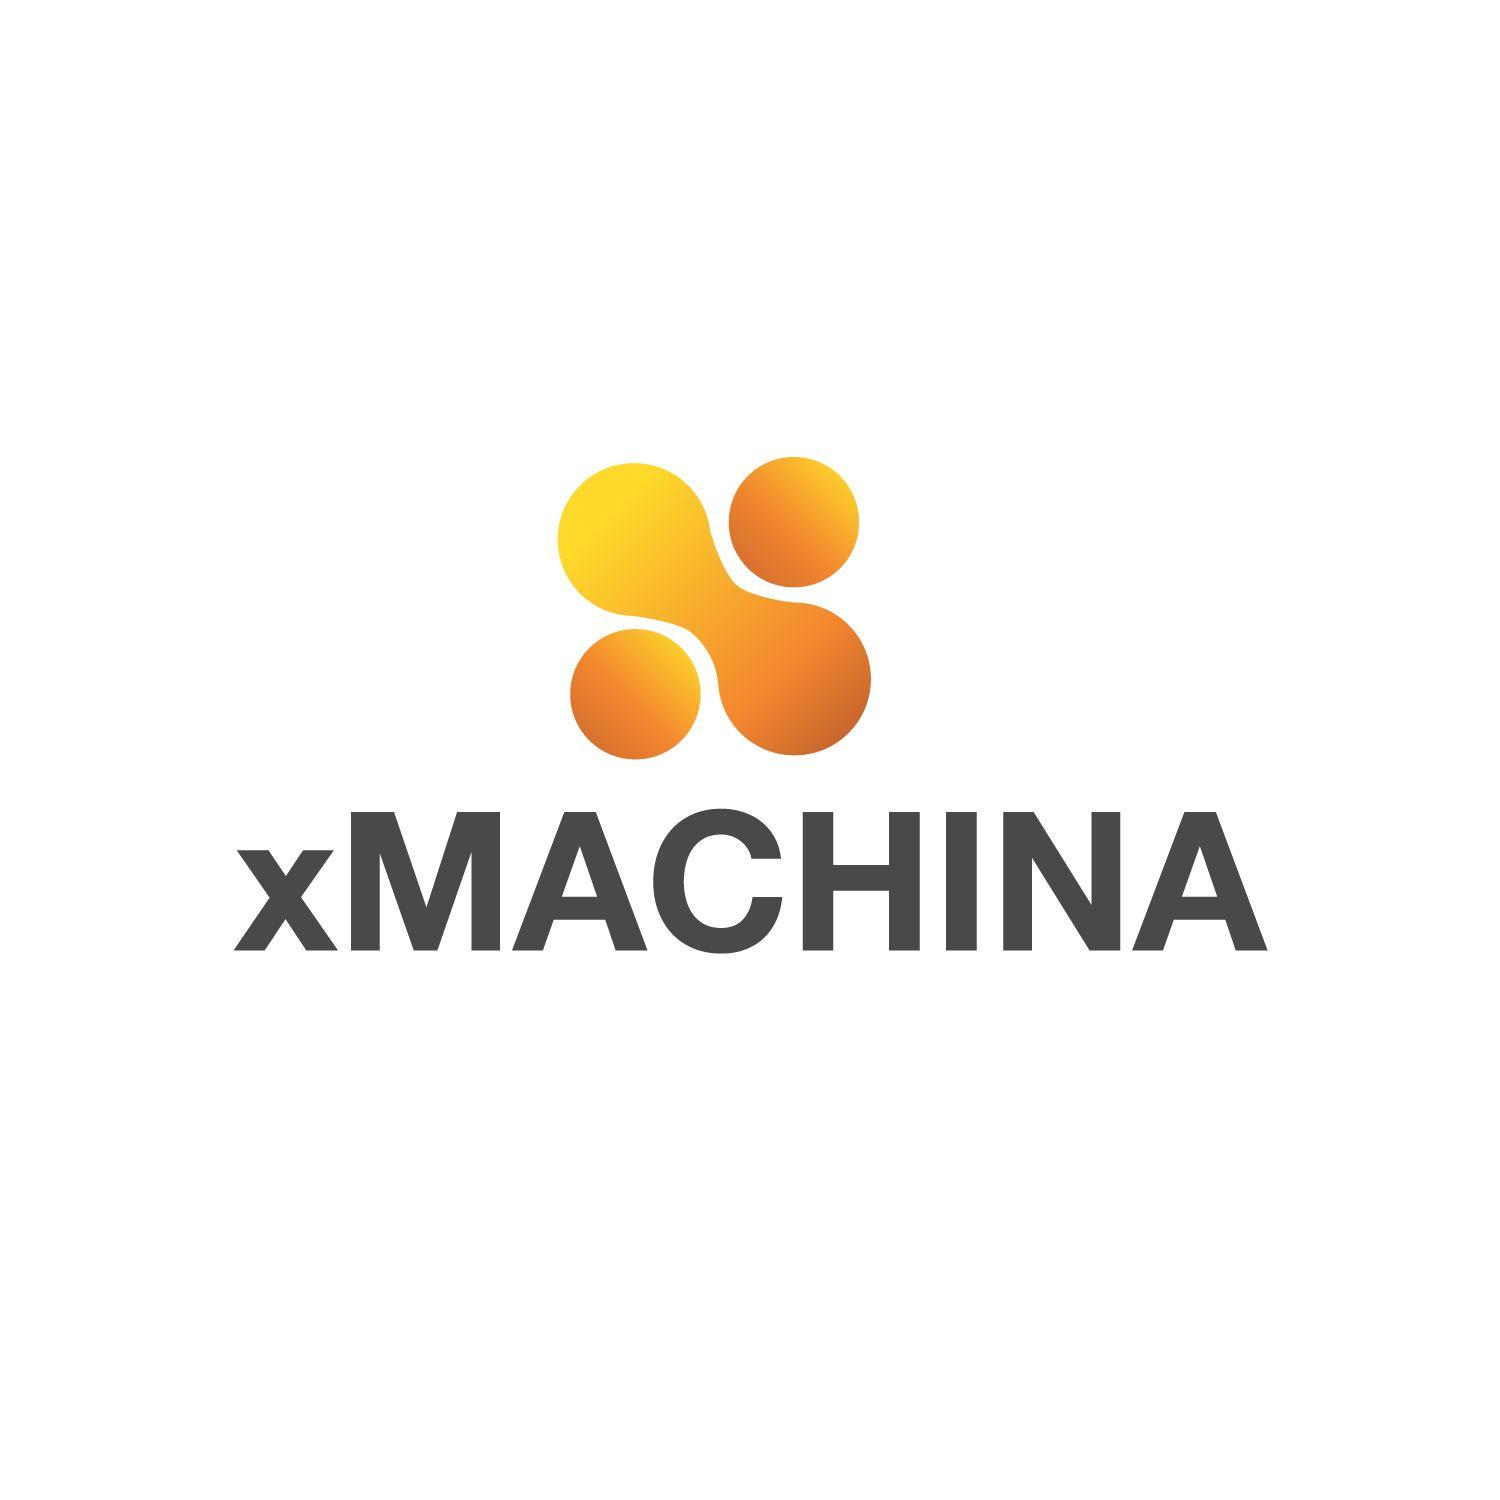 Stephanie Logo - Modern, Elegant, Computer Software Logo Design for xMachina